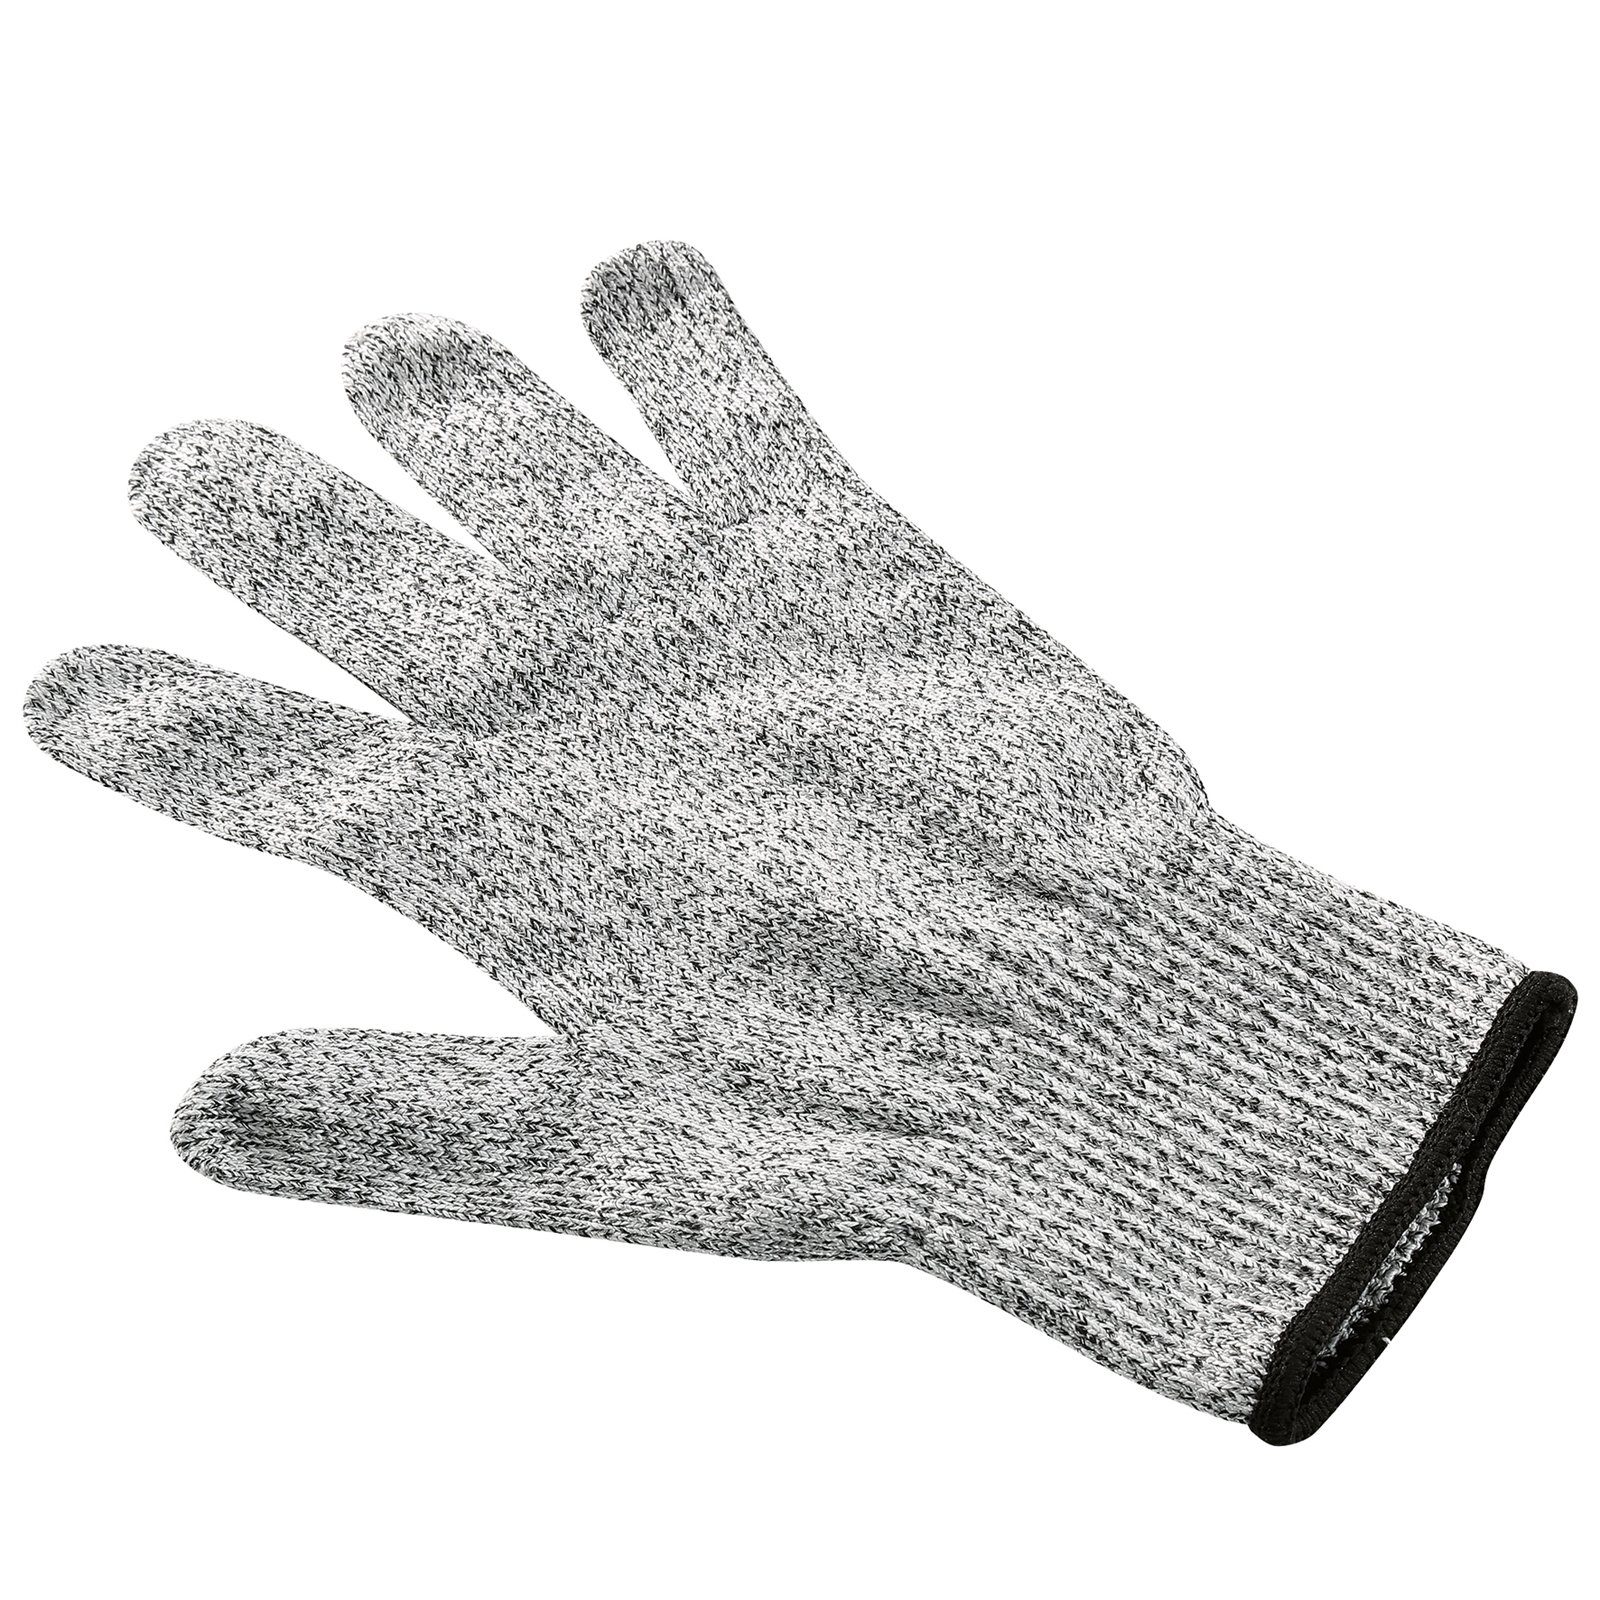 Küchenprofi Safety Schnittschutz Handschuh Schnittschutzhandschuhe